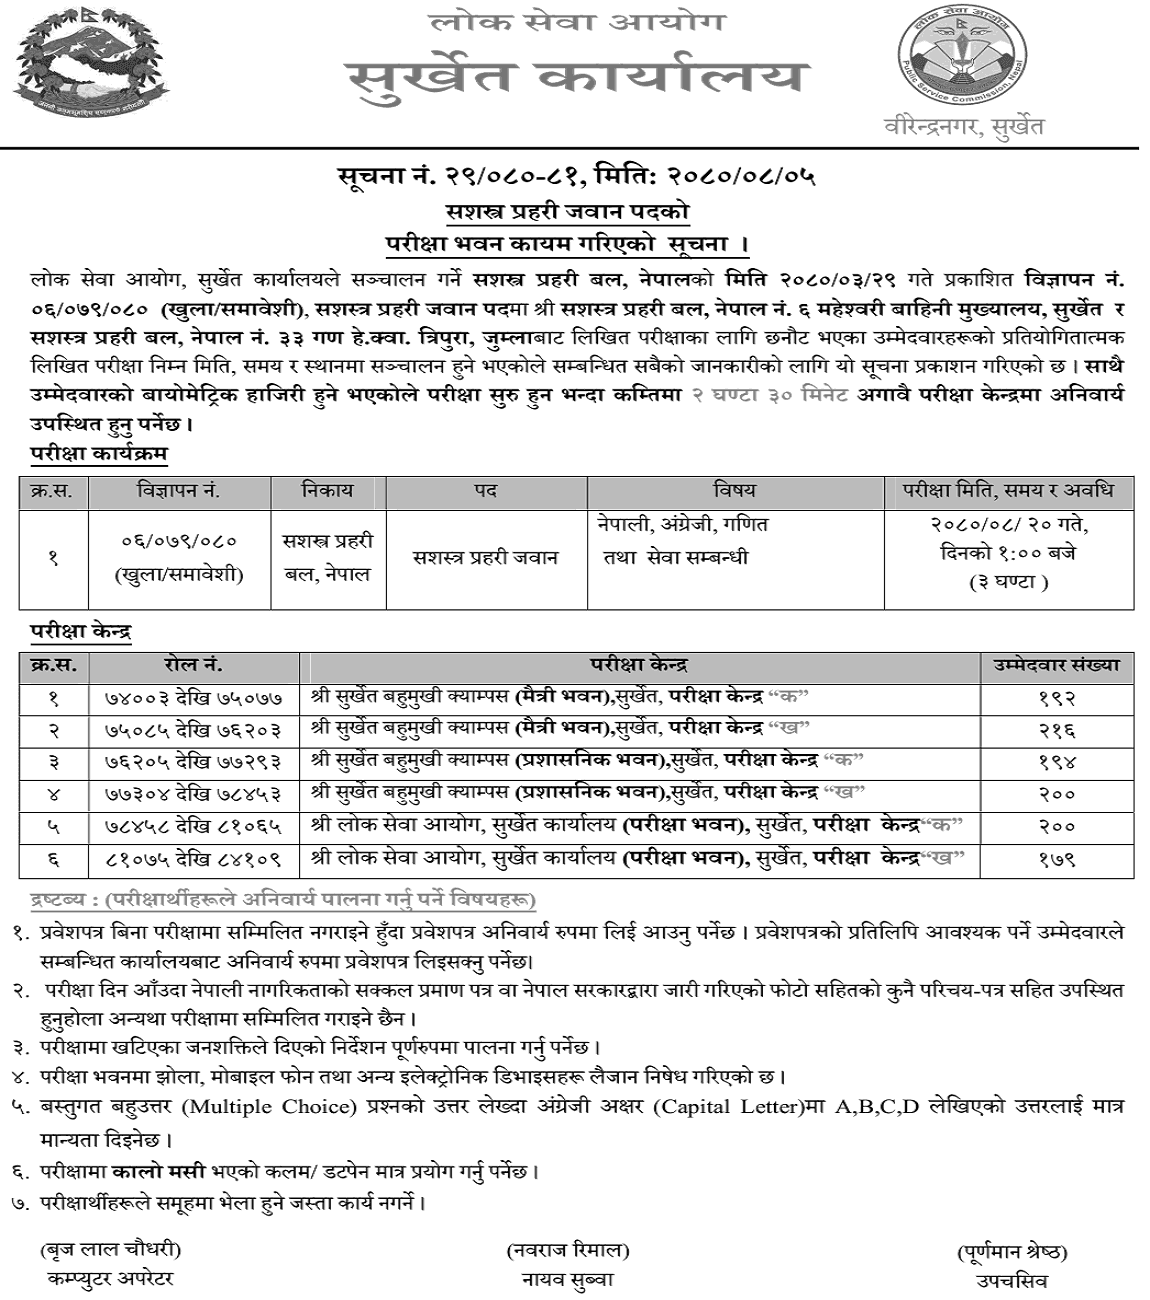 APF Nepal Jawan Post Surkhet Written Exam Center 2080